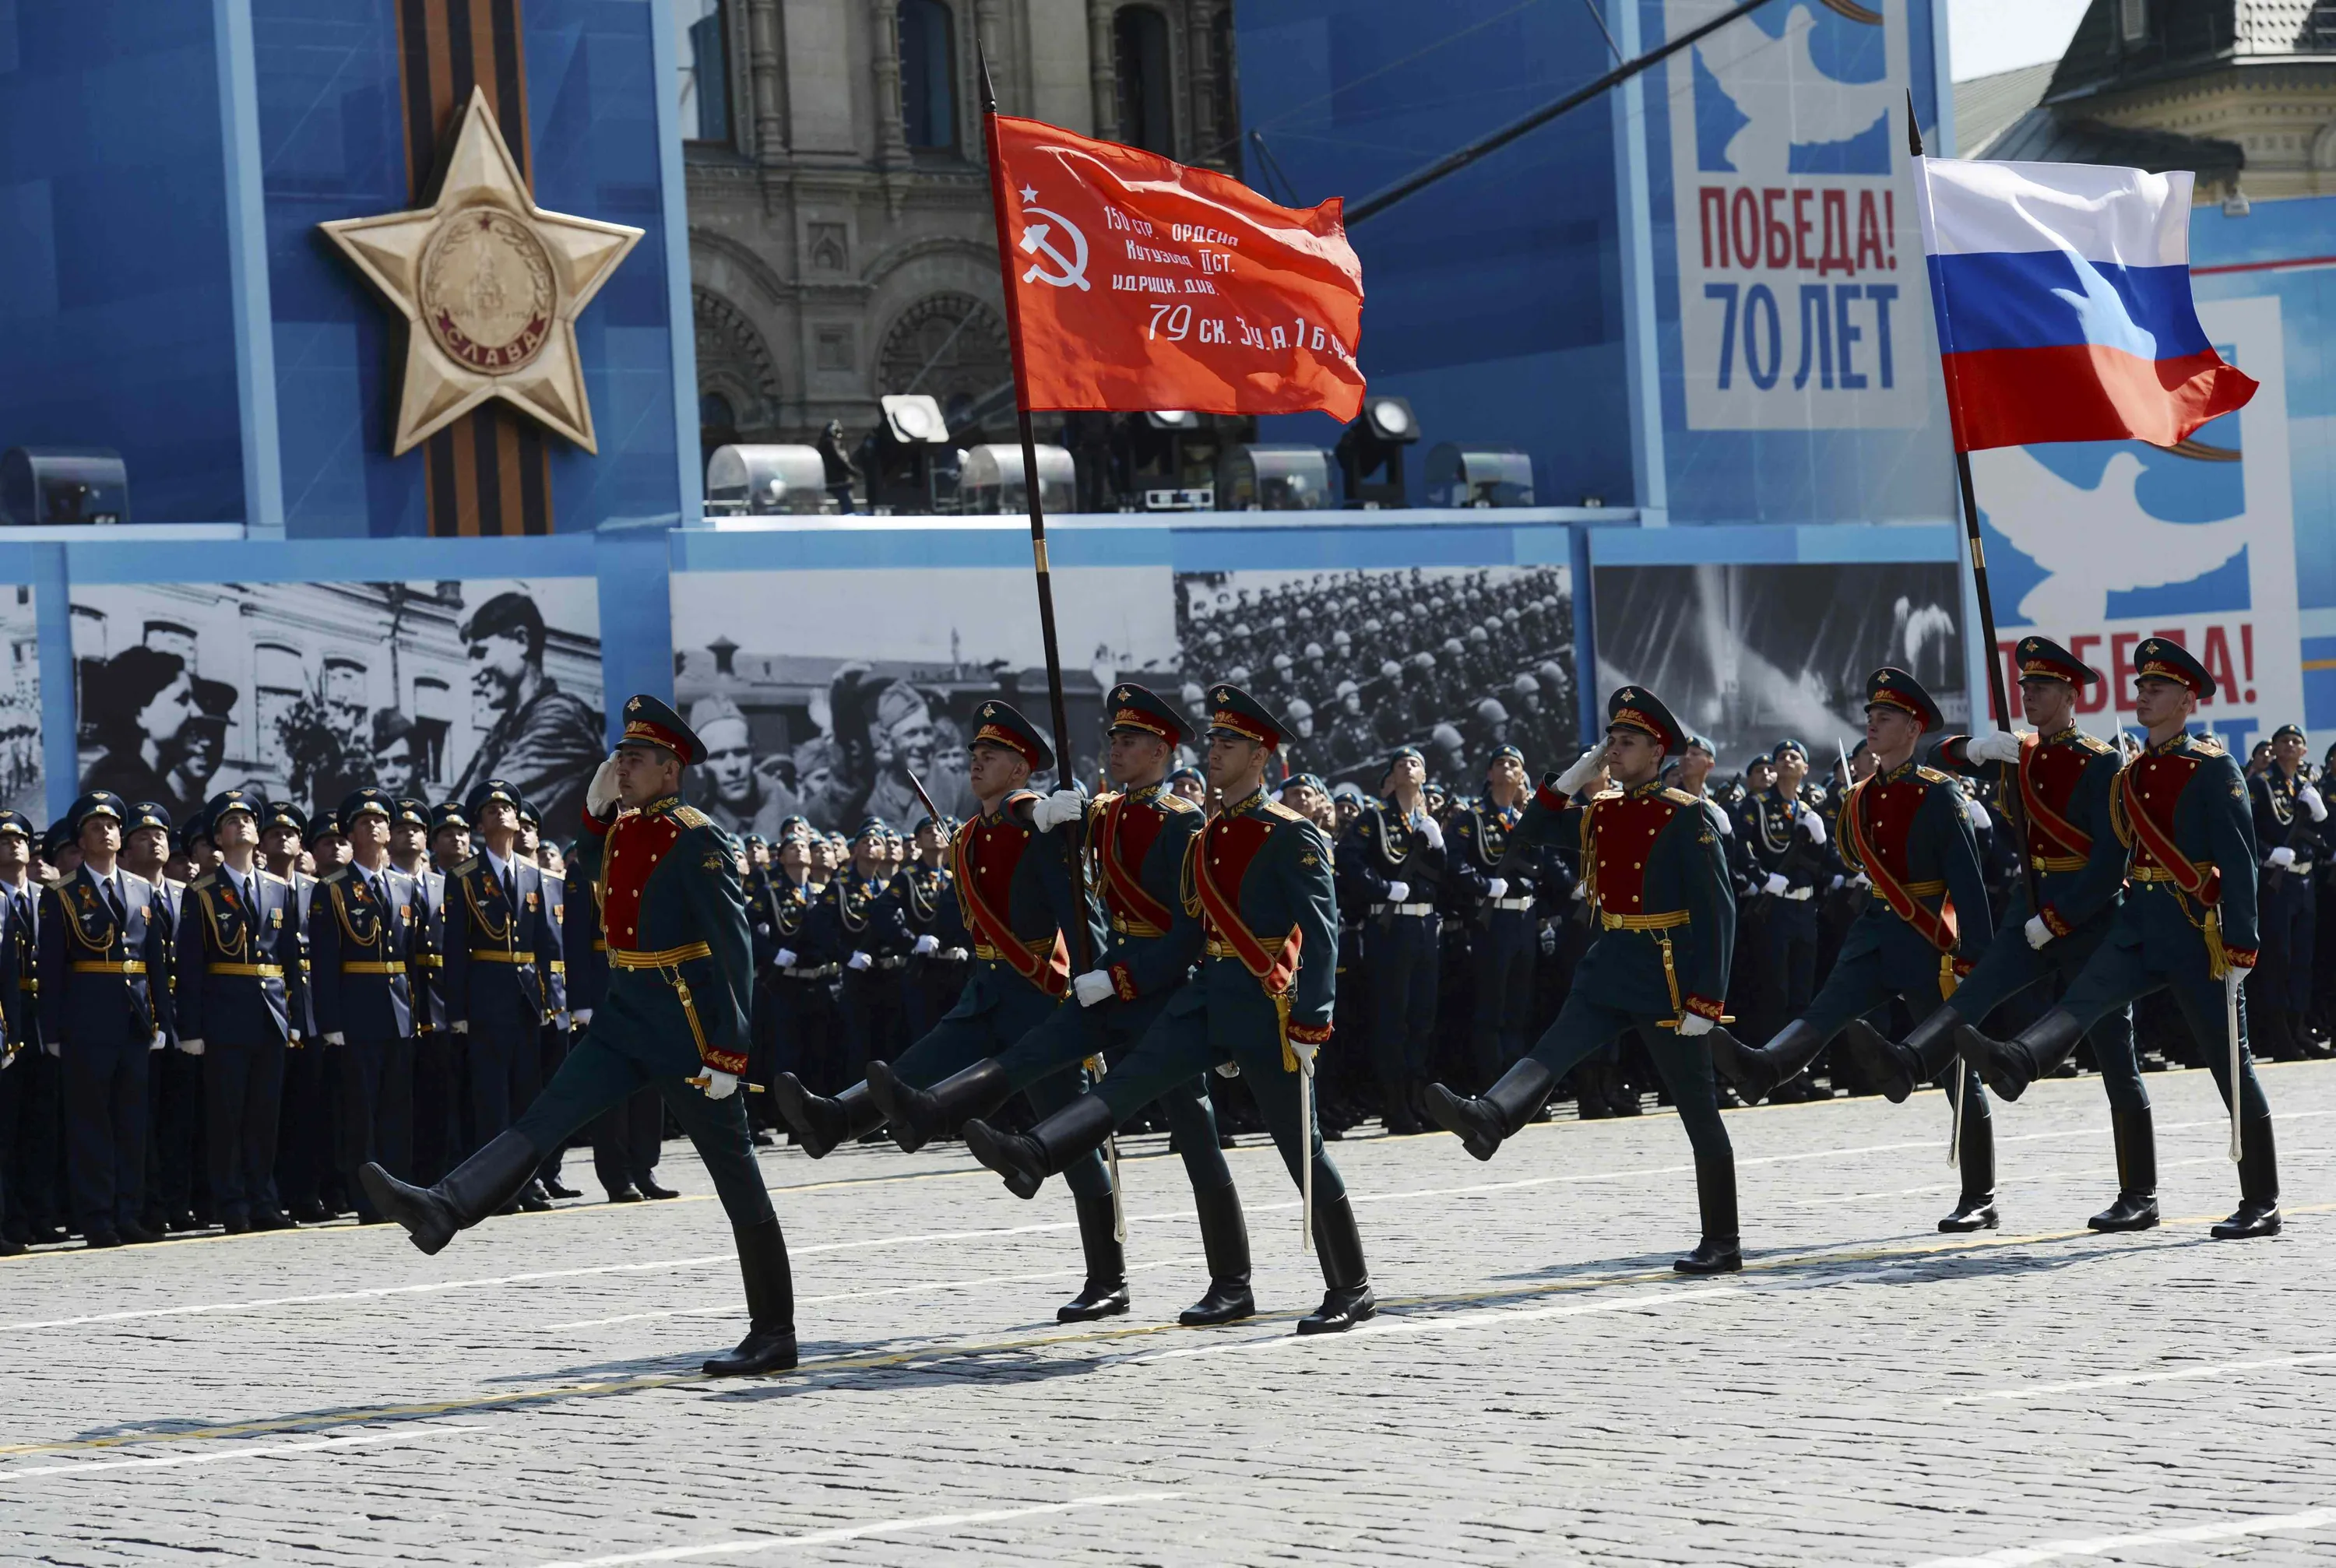 9 мая какой праздник есть. Знамя Победы на параде в Москве. Парад на красной площади 9 мая 2015 года. Парад Победы на красной площади 70 лет Победы. 9 Мая парад Знамя Победы Москва.